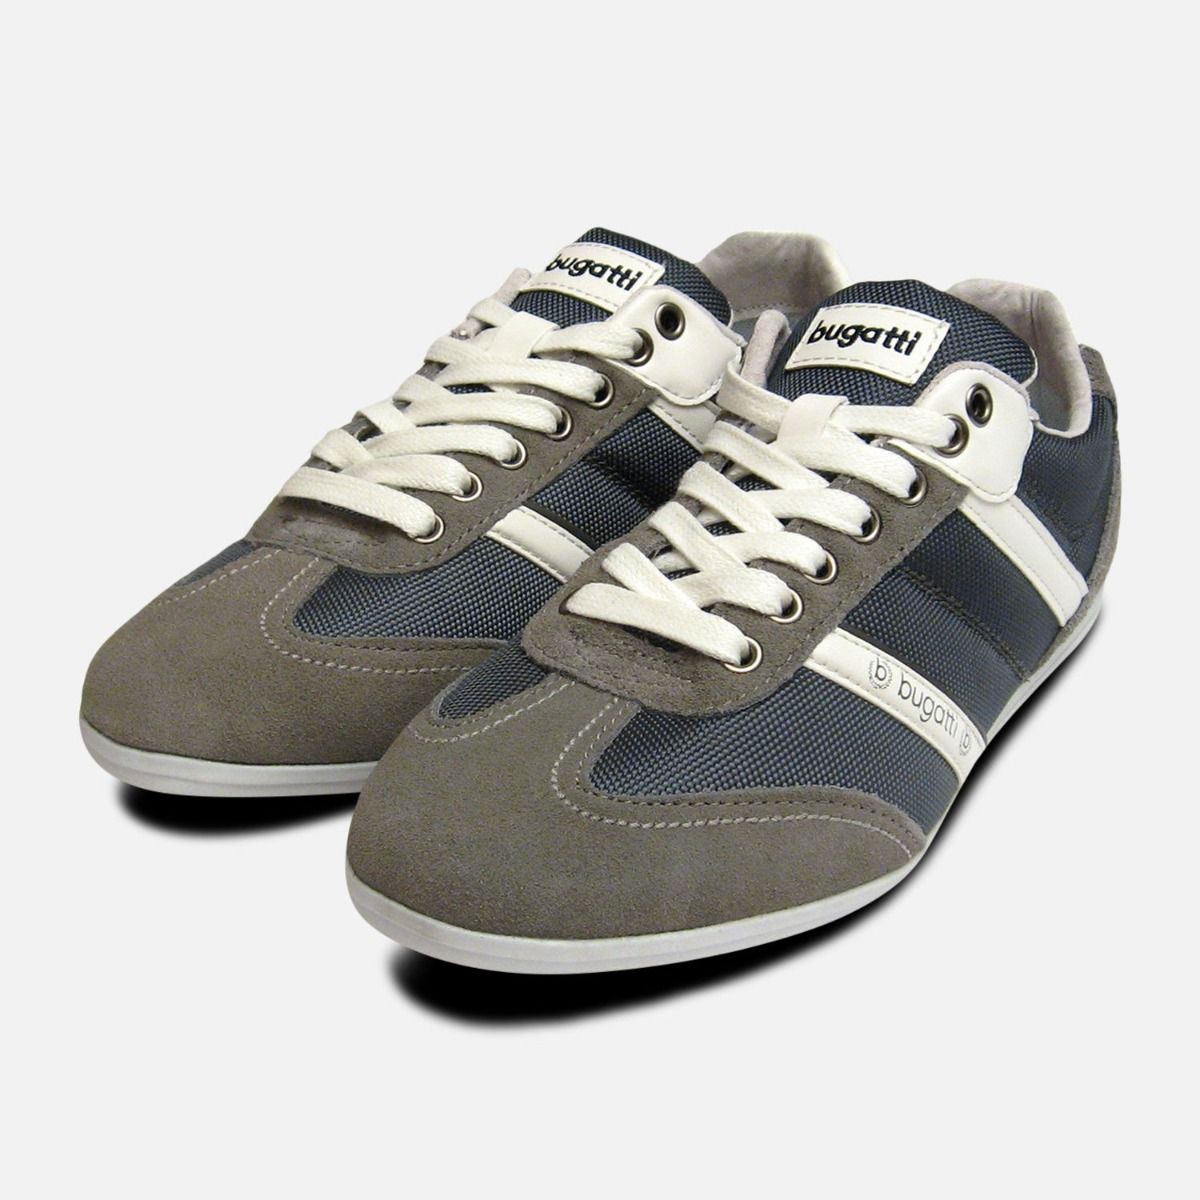 grey suede sneakers mens